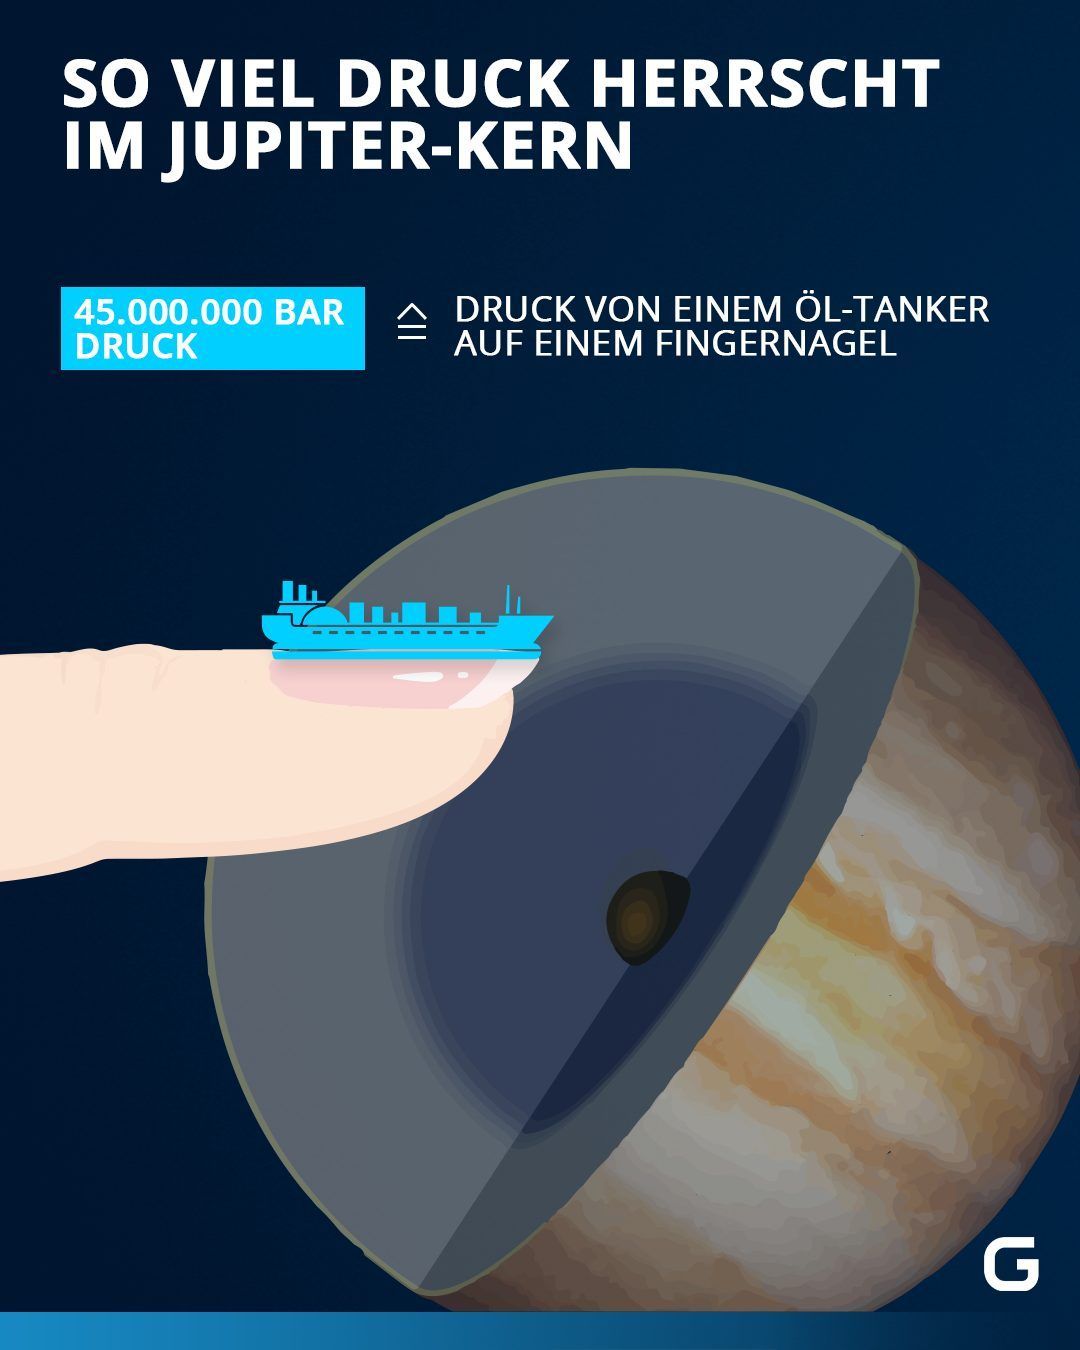 In Sachen Hochdruck setzt Jupiter den Maßstab unter den Planeten. In seinem Inneren lastet auf jedem Quadratzentimeter ein Druck von über 50.000 Tonnen. Das entspricht einem mittelgroßen Öltanker.